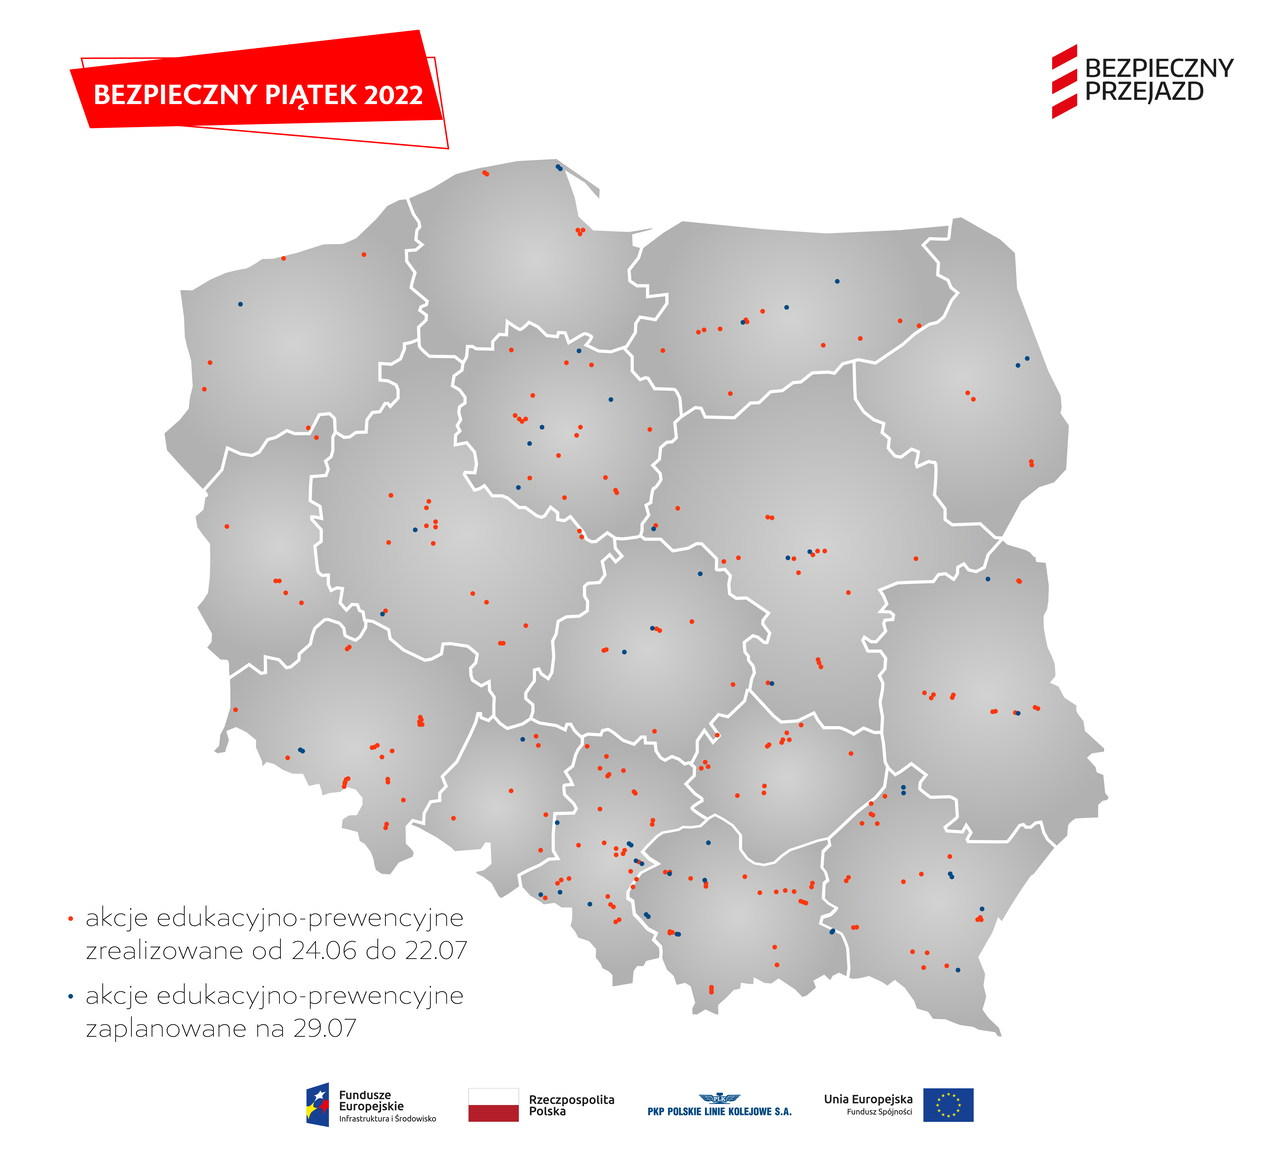 Mapa Polski z naniesionymi lokalizacjami akcji ulotkowych